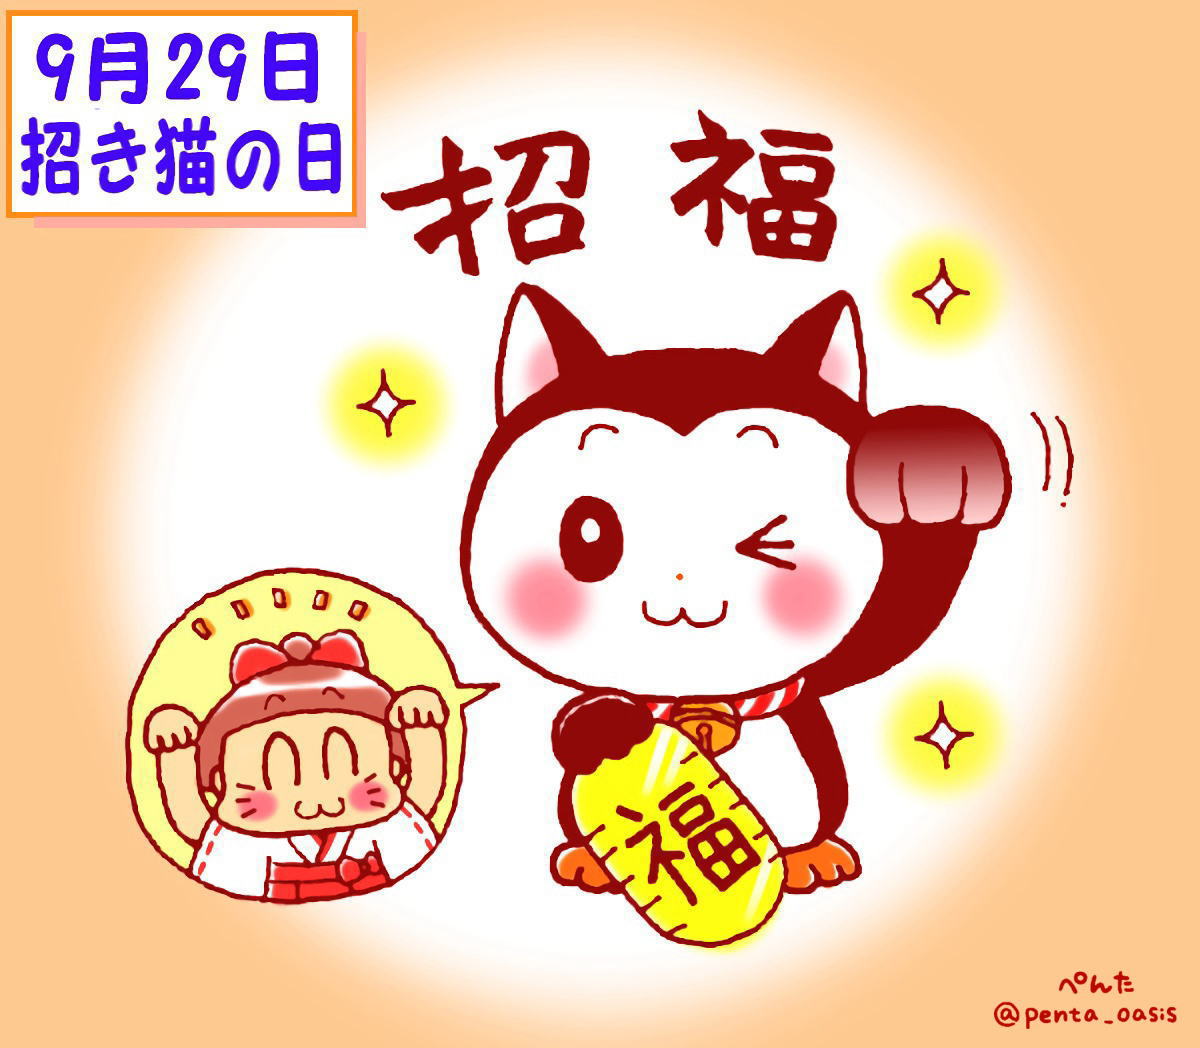 9月29日　招き猫の日 イラスト　福ちゃん　※無断転載禁止